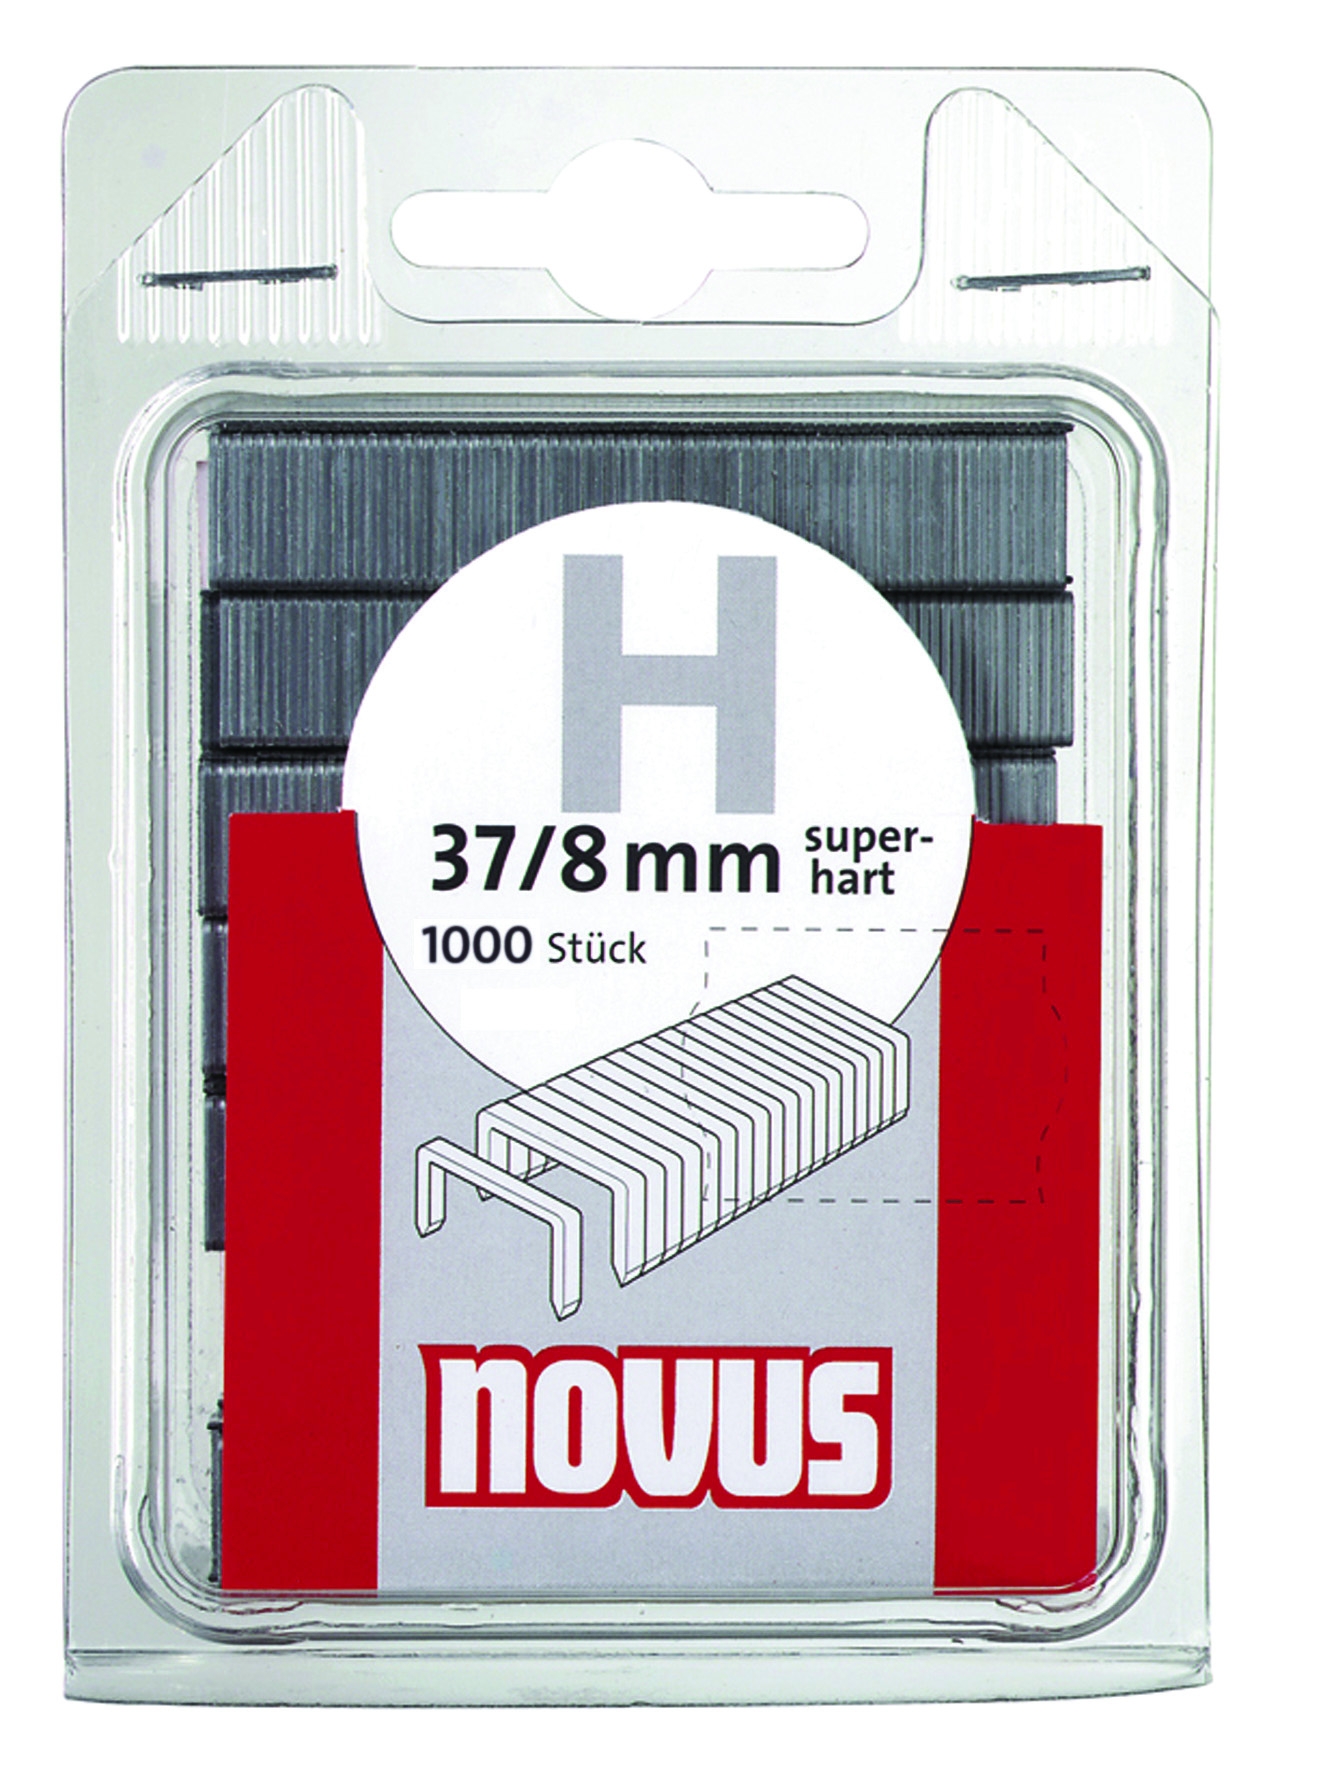 Novus dundraad nieten type H 1000 stuks 10 mm